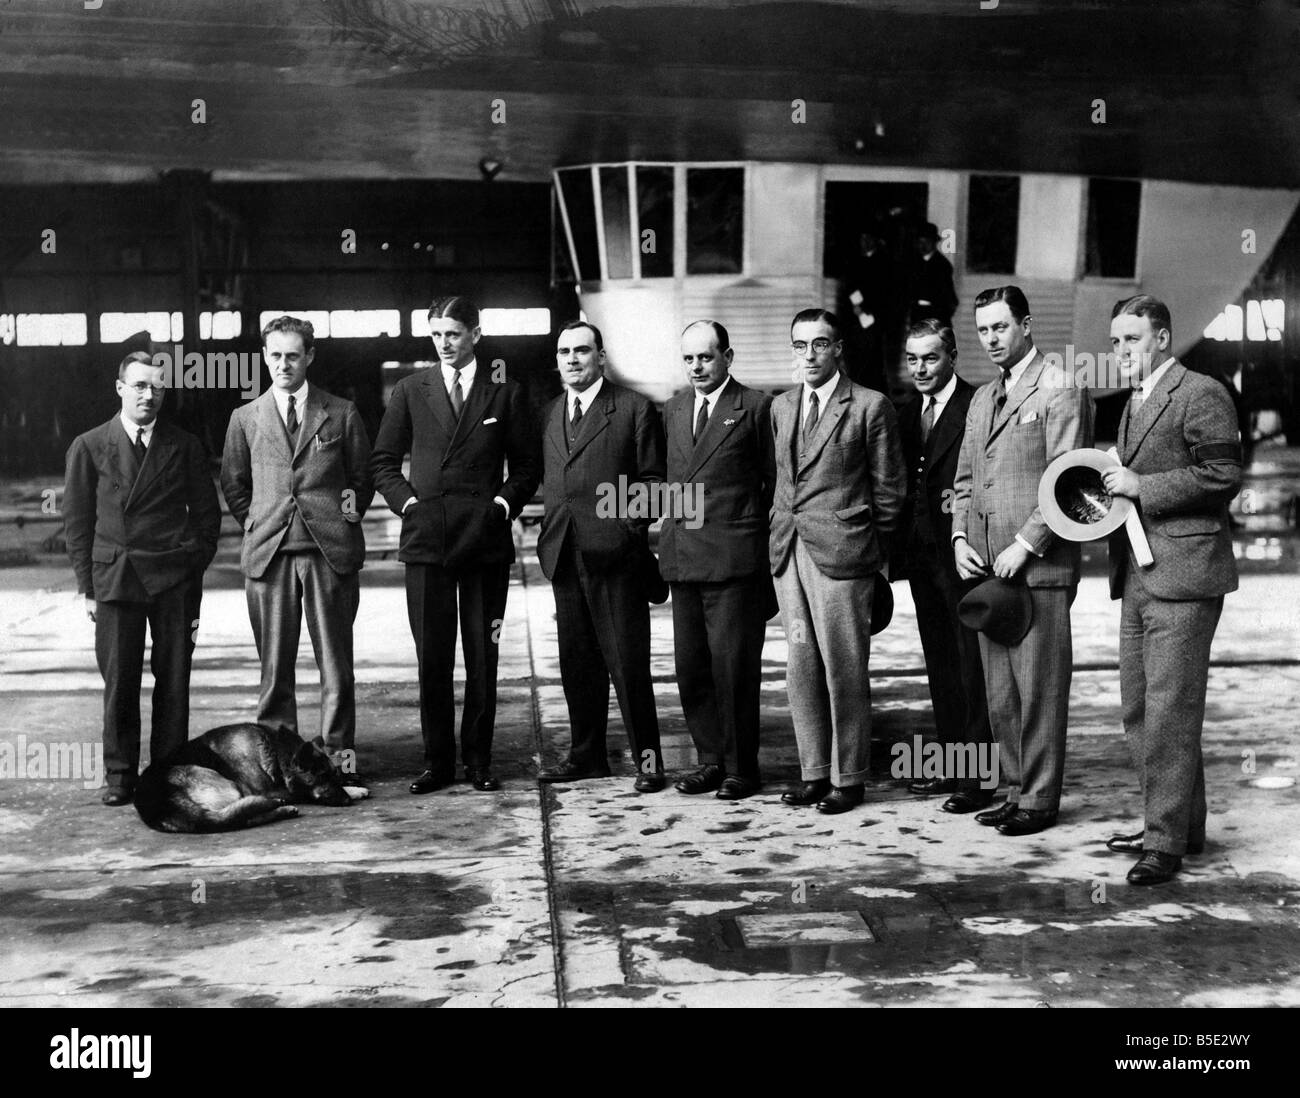 Gli uomini che hanno costruito e controllerà il dirigibile R101, visto qui a Cardington, Bedfordshire. Ottobre 1929 P001299 Foto Stock